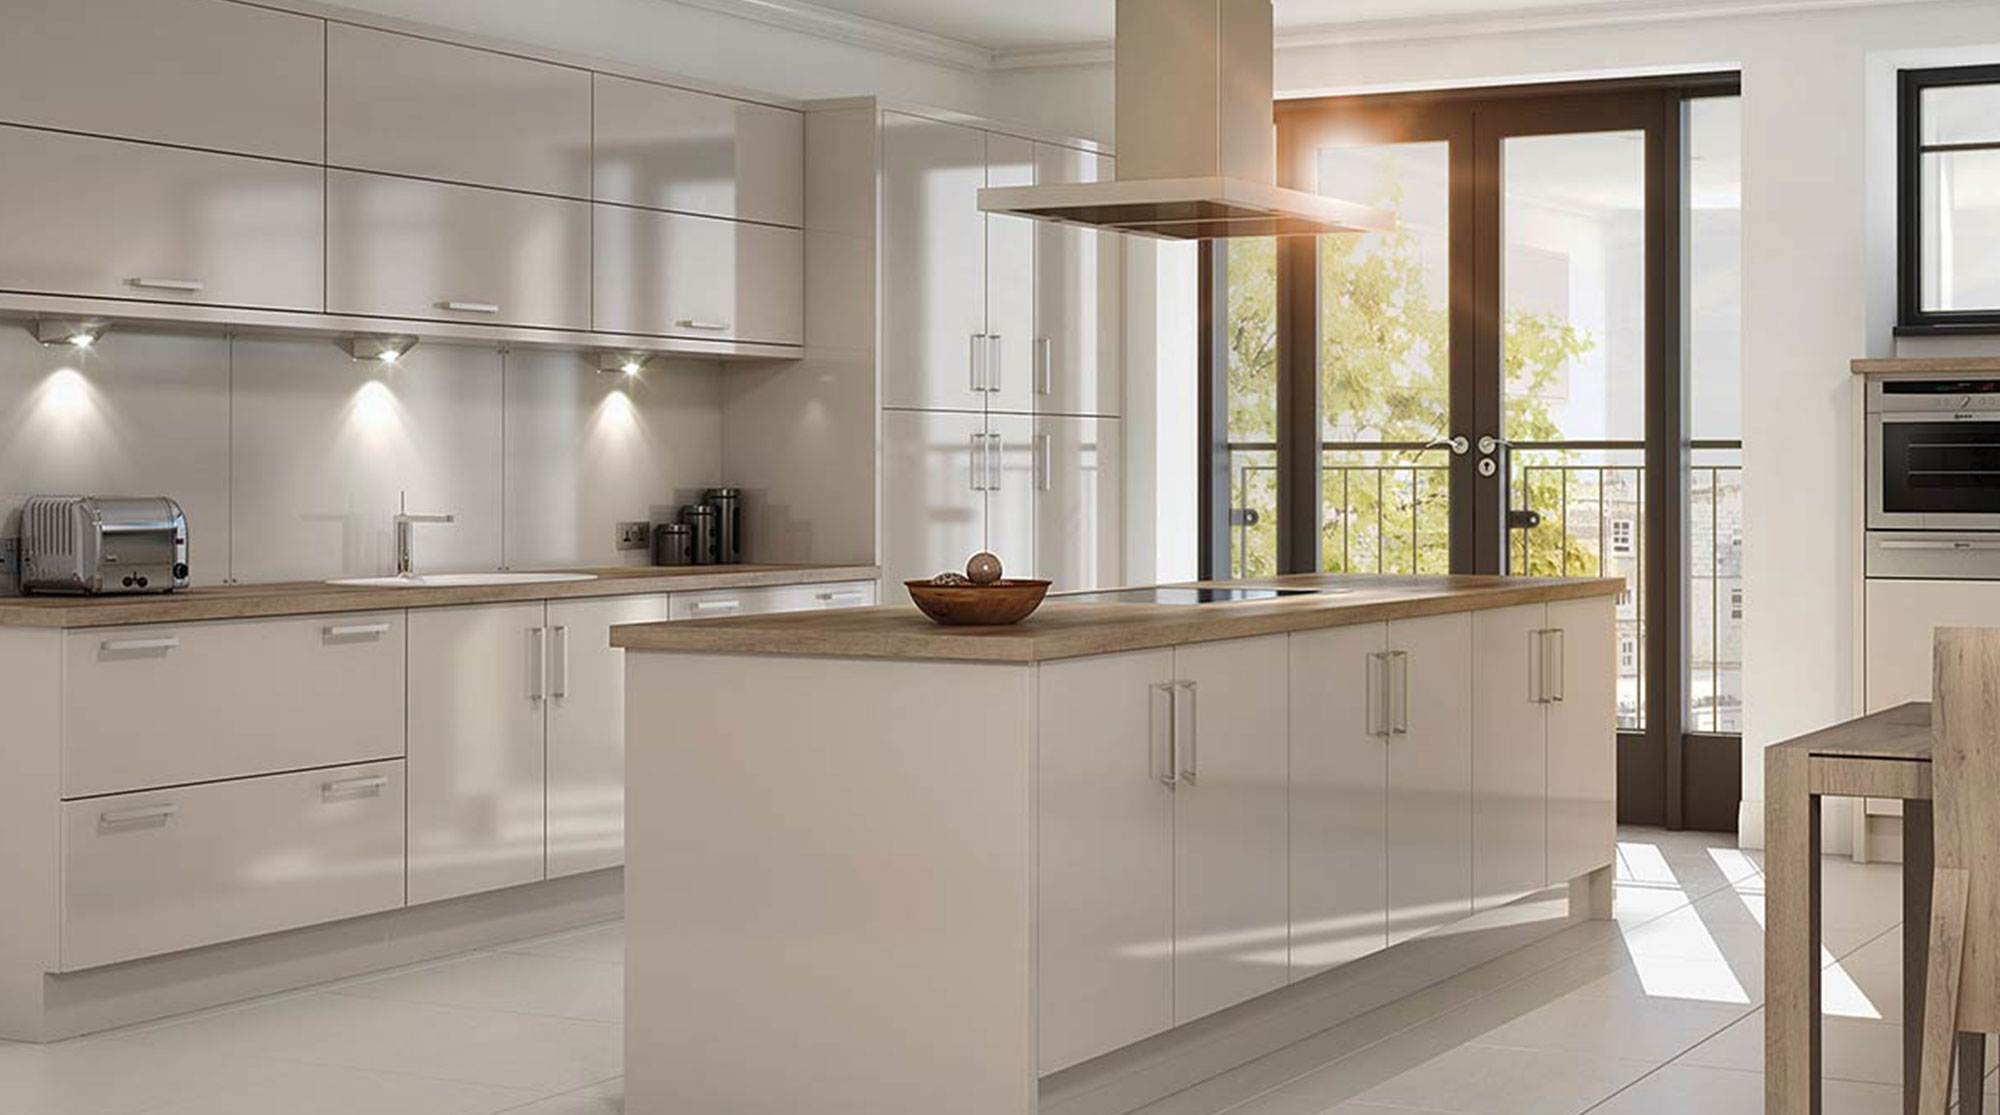 OTR elegant modular kitchen furniture